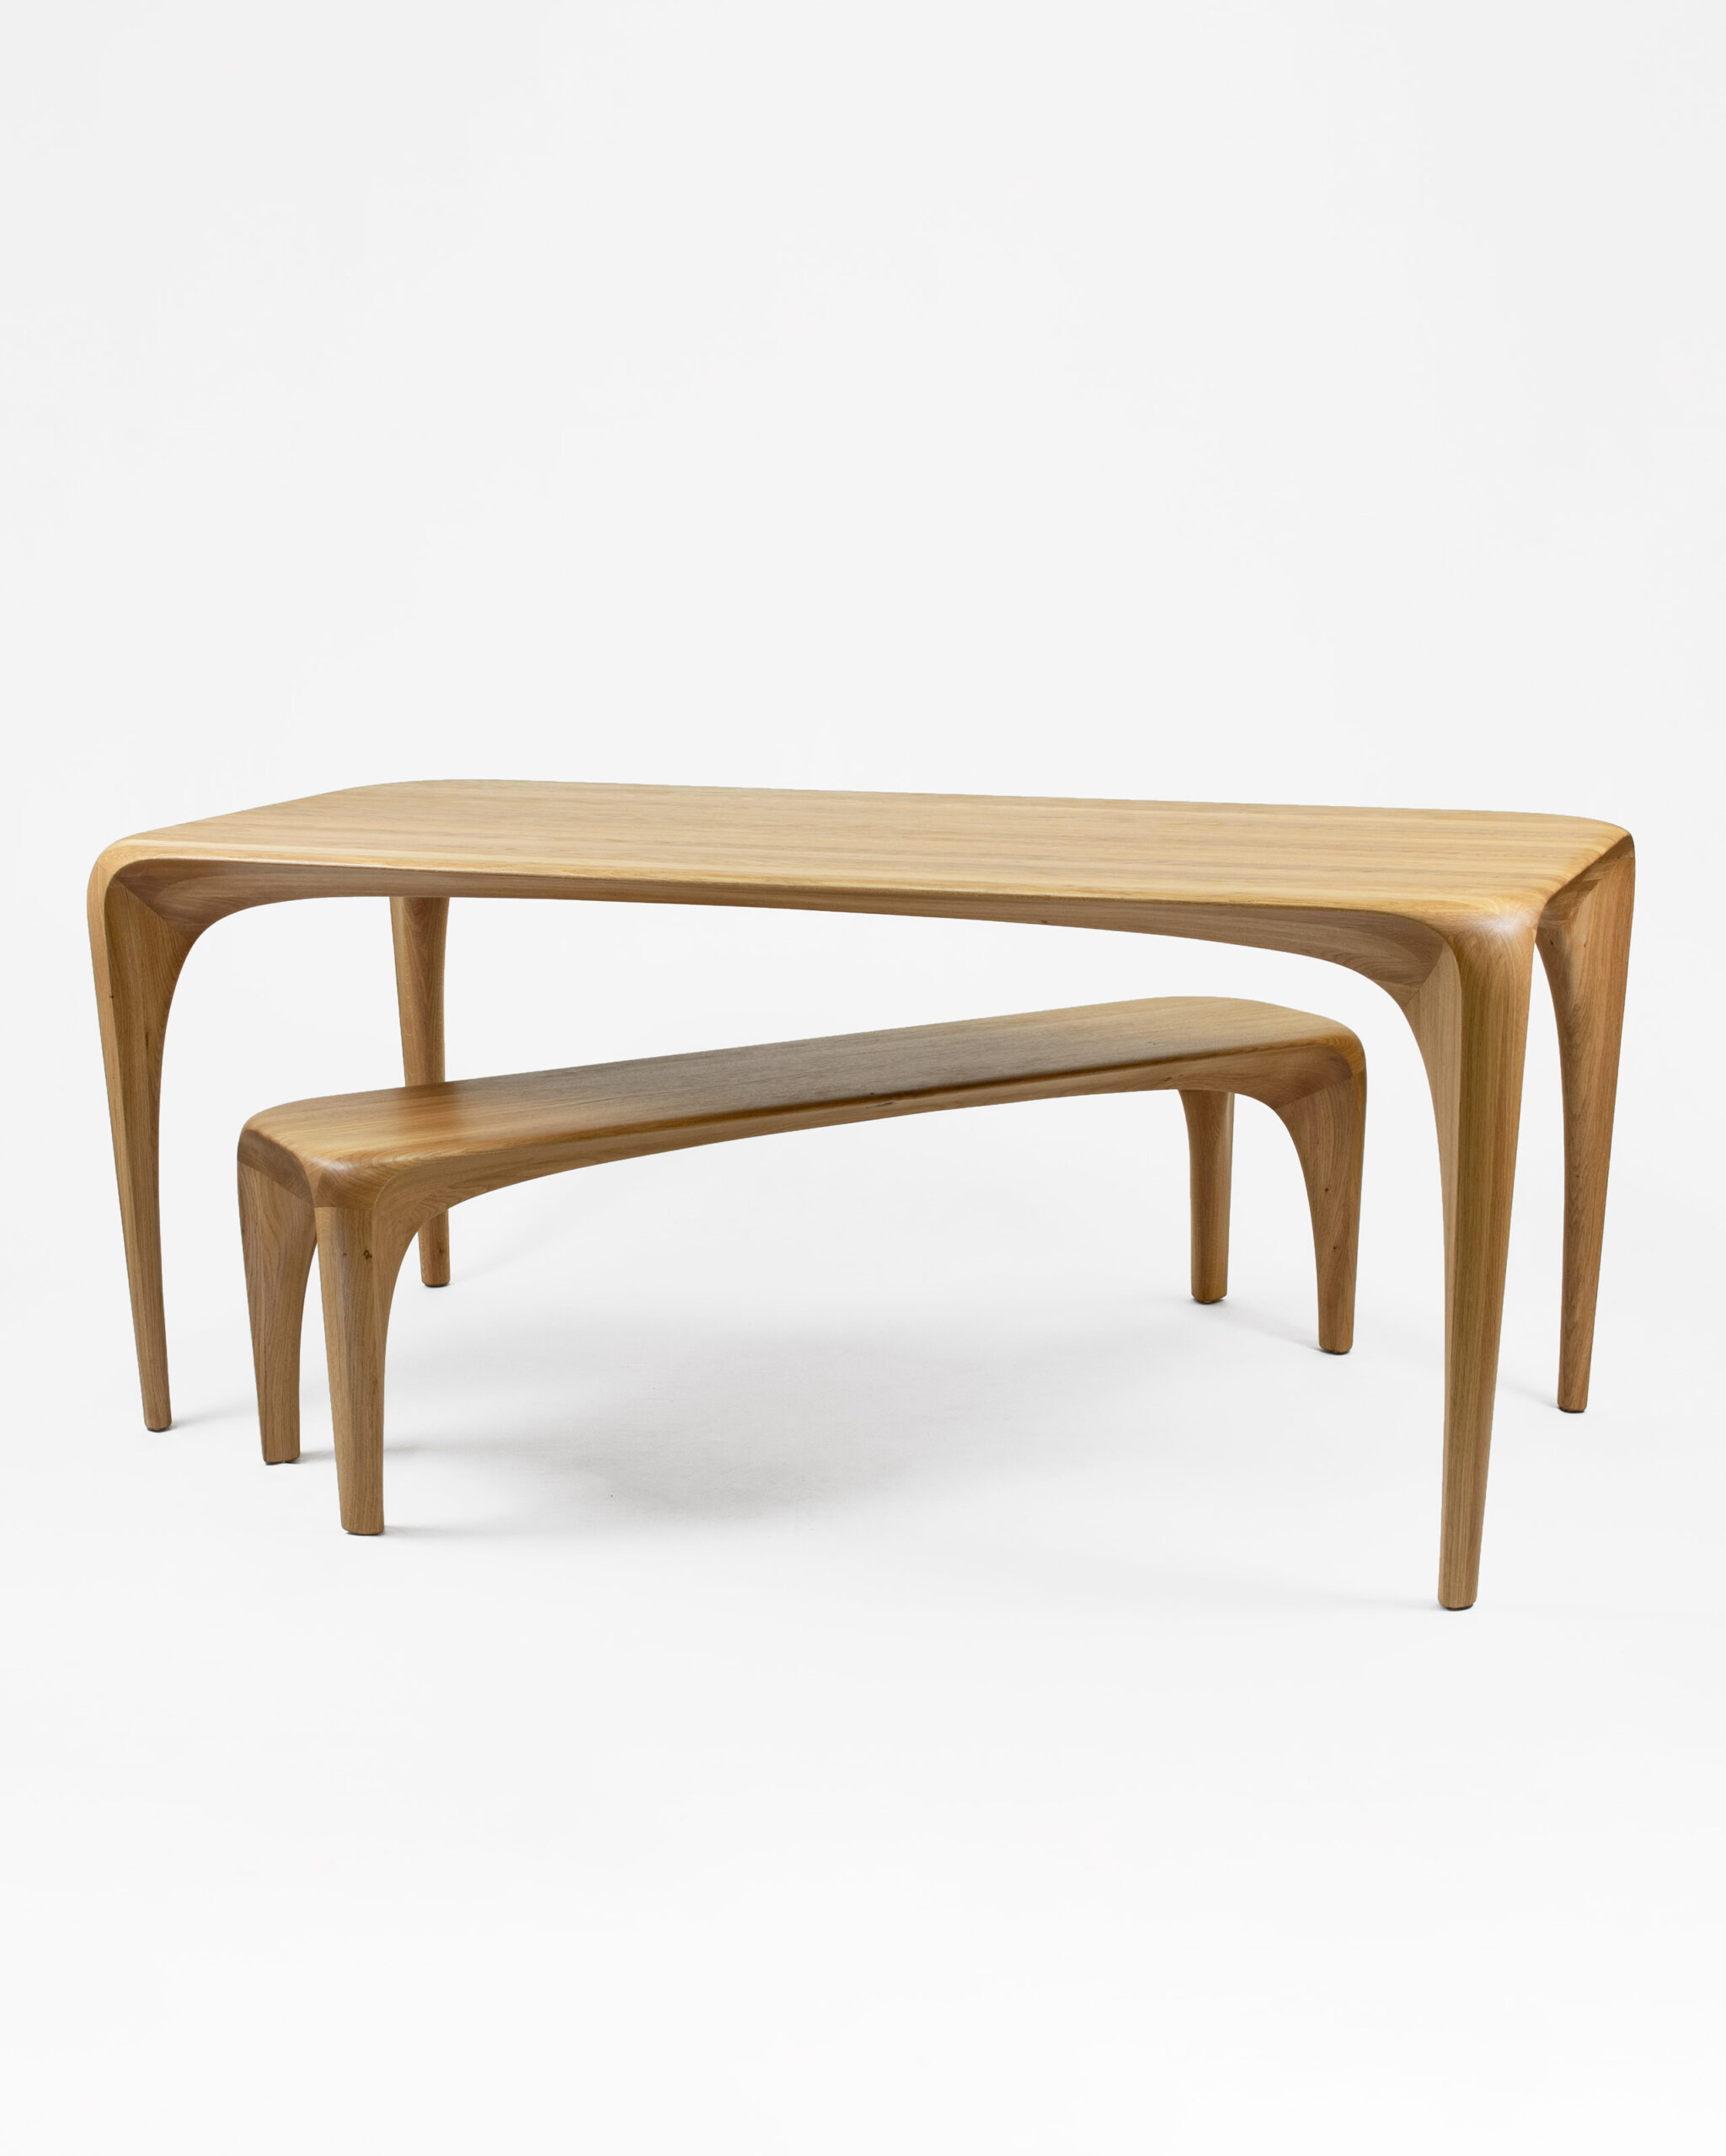 Maxime Goléo - bois - chêne - bureau - table - banc - organique - moderne - contemporain - design - sensuel - épuré - sculpture